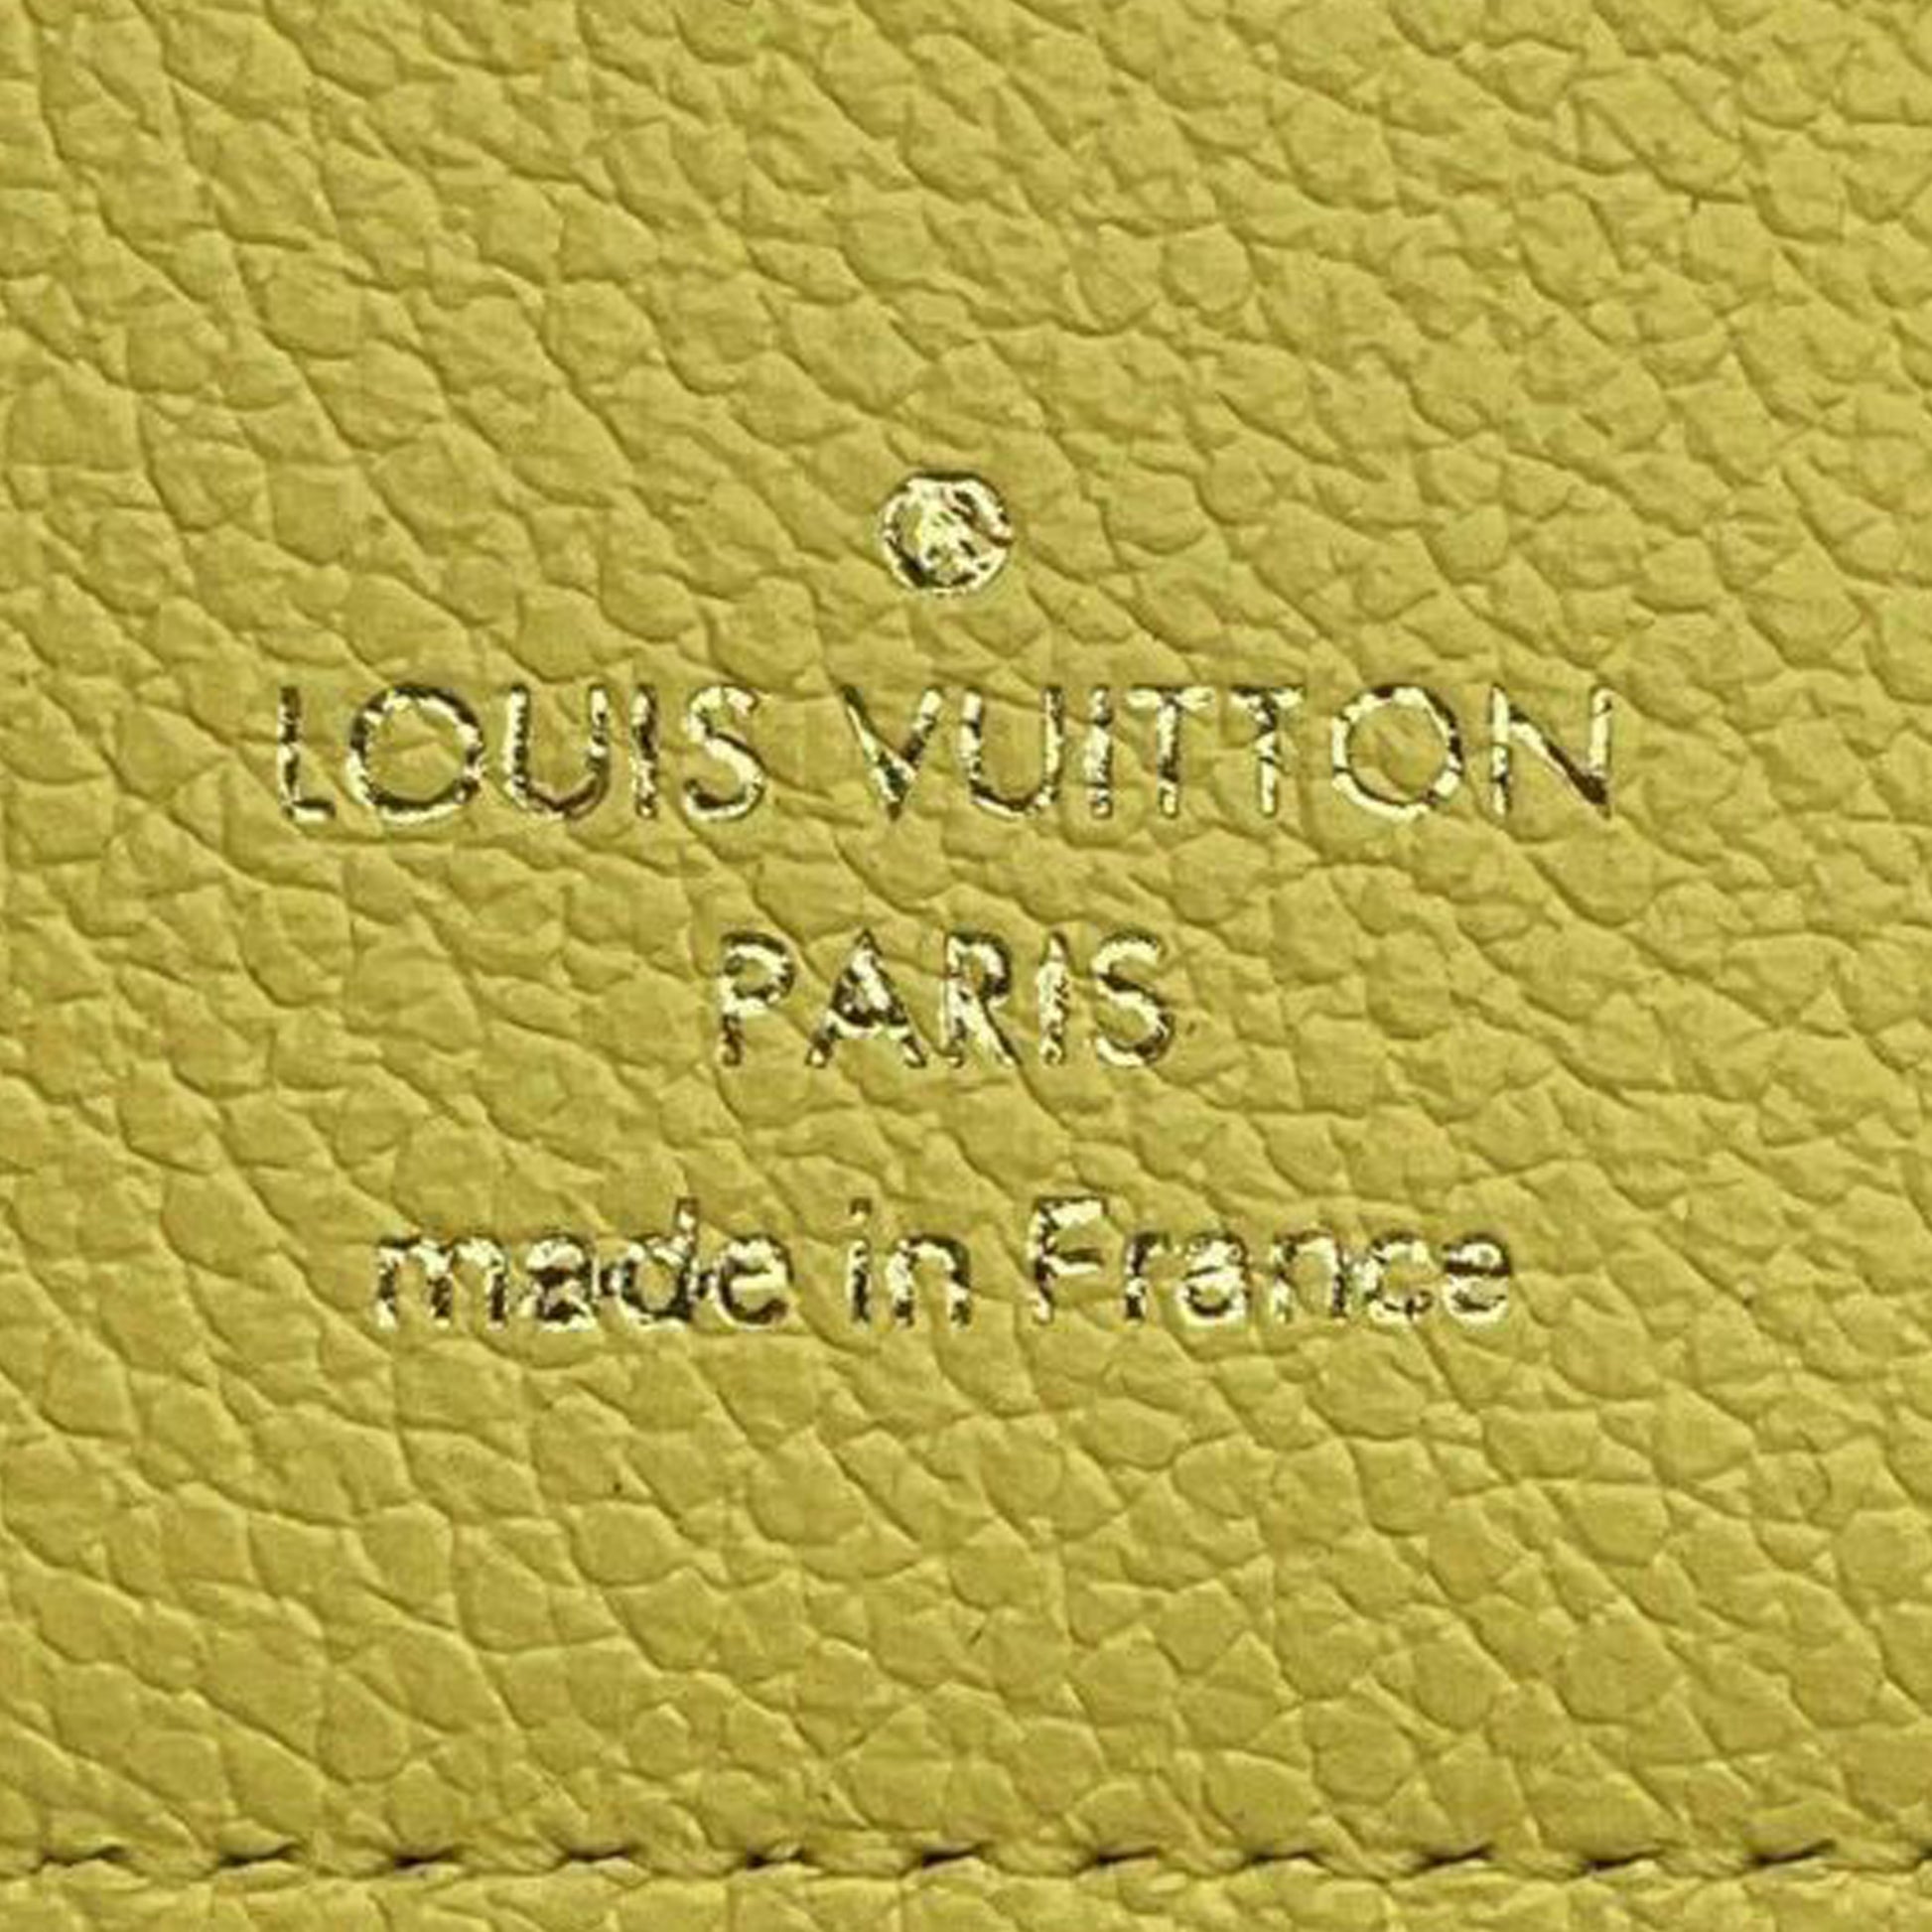 LOUIS VUITTON Victorine Wallet Black Monogram Empreinte – The Little Bird